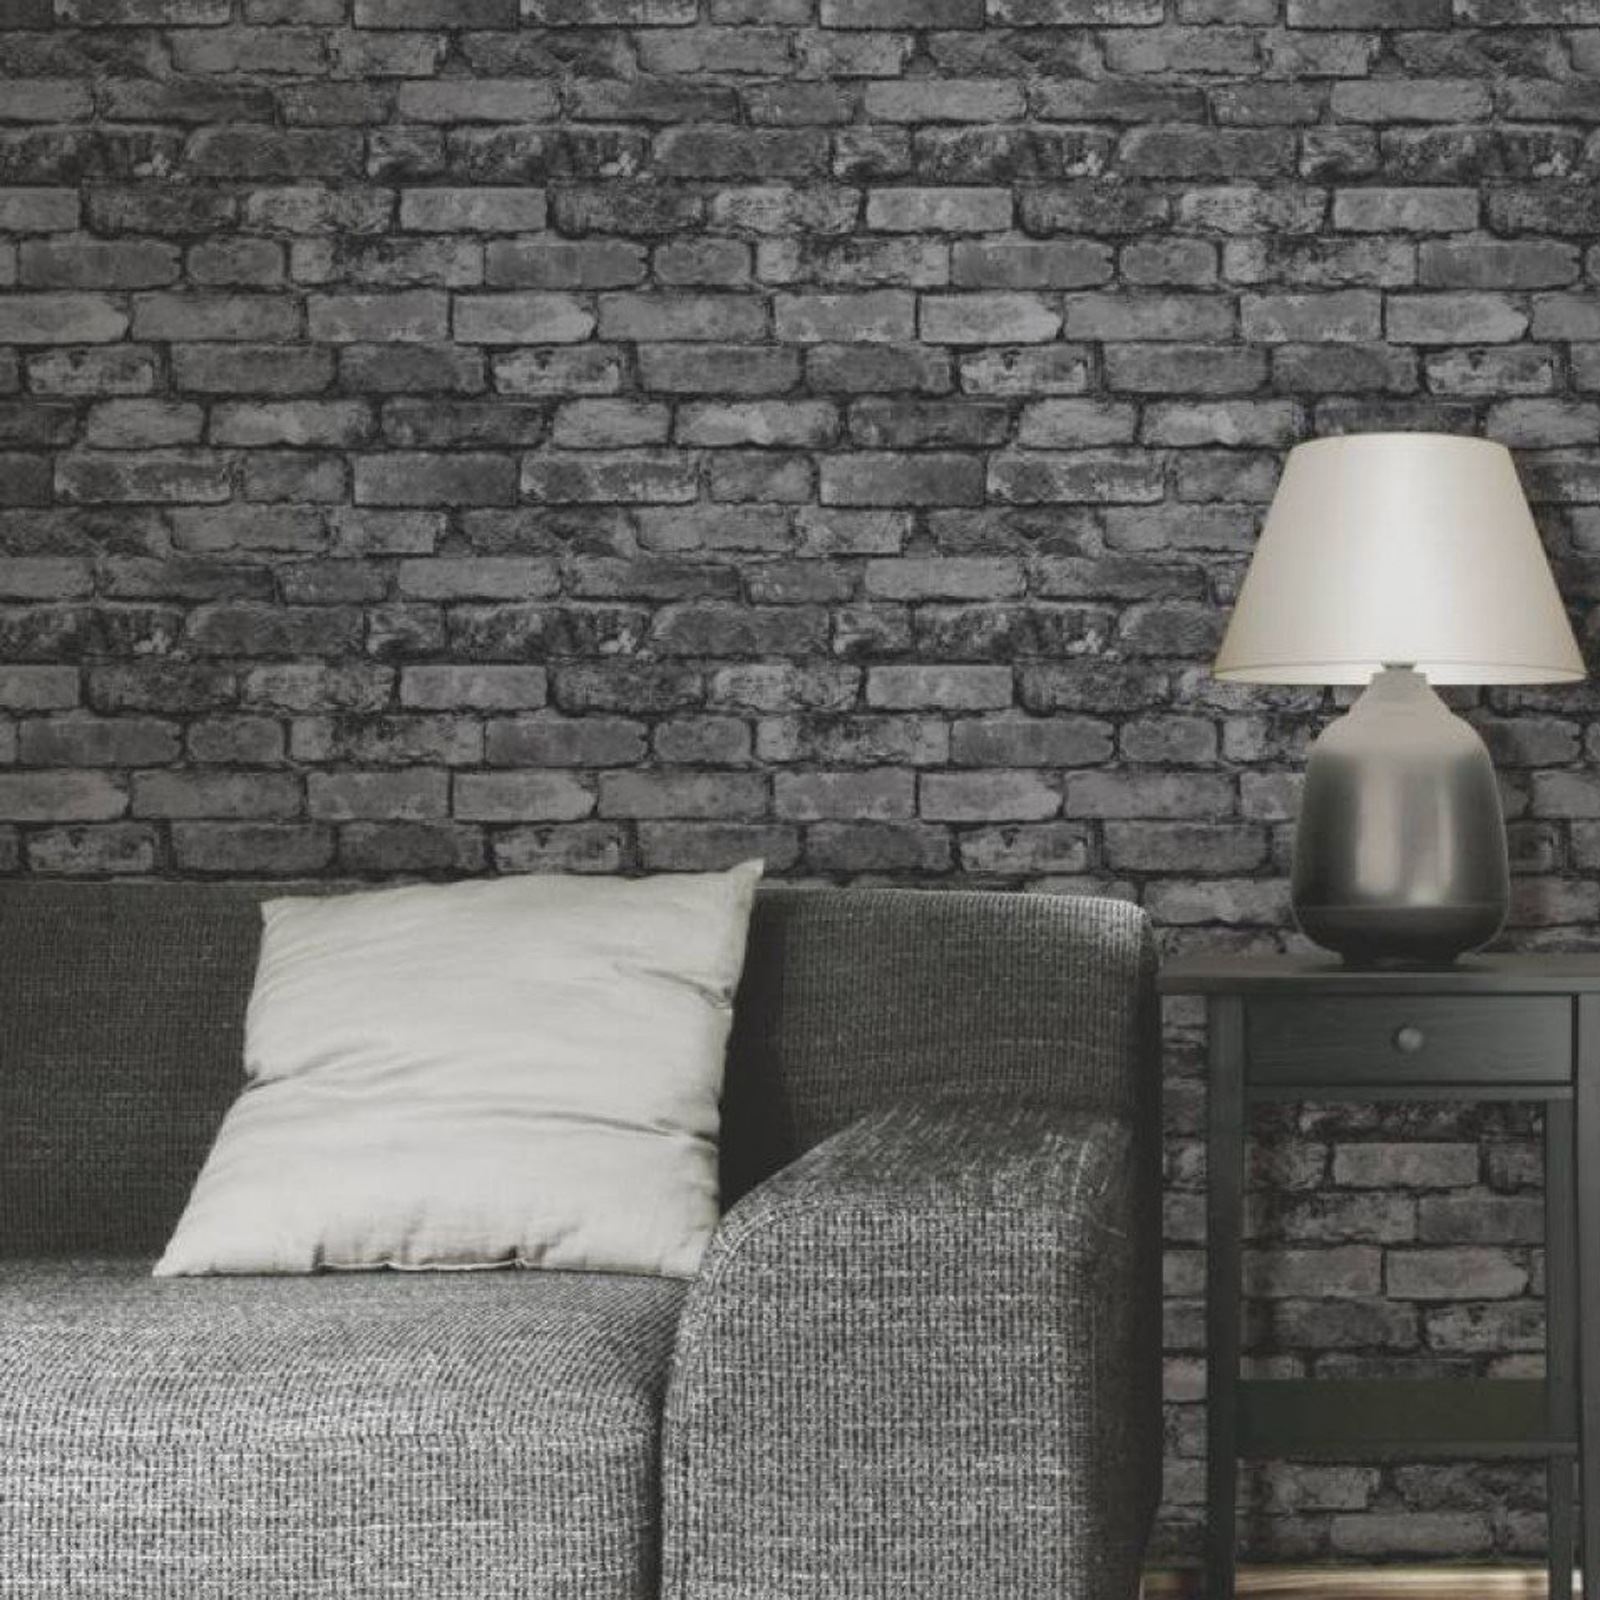 grey wallpaper bedroom,wall,brick,wallpaper,room,lighting